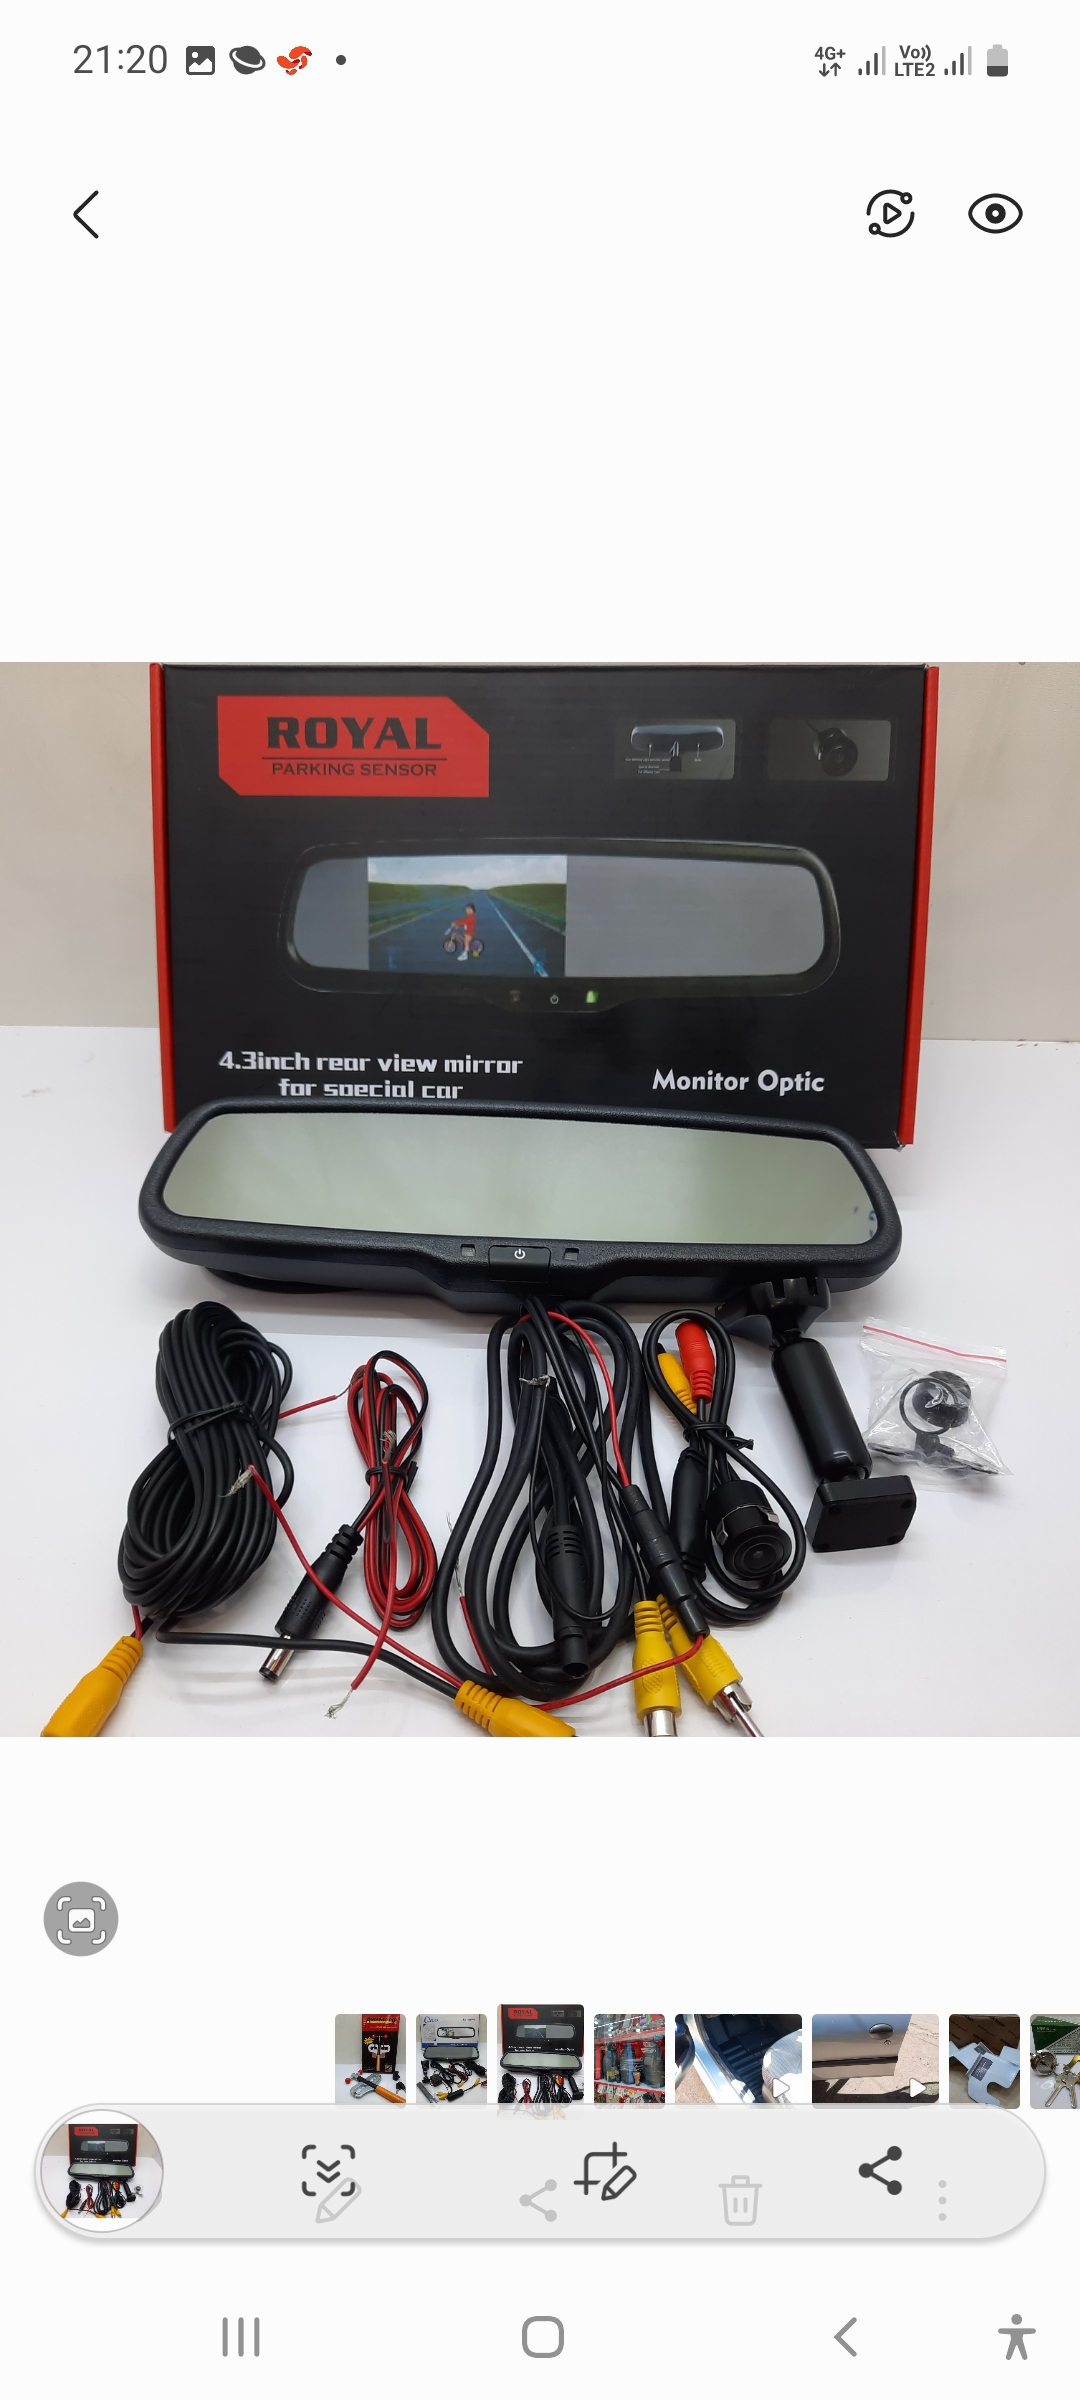 آینه مانیتور پایه فابریک royal با دوربین ویژه خودروهای خارجی